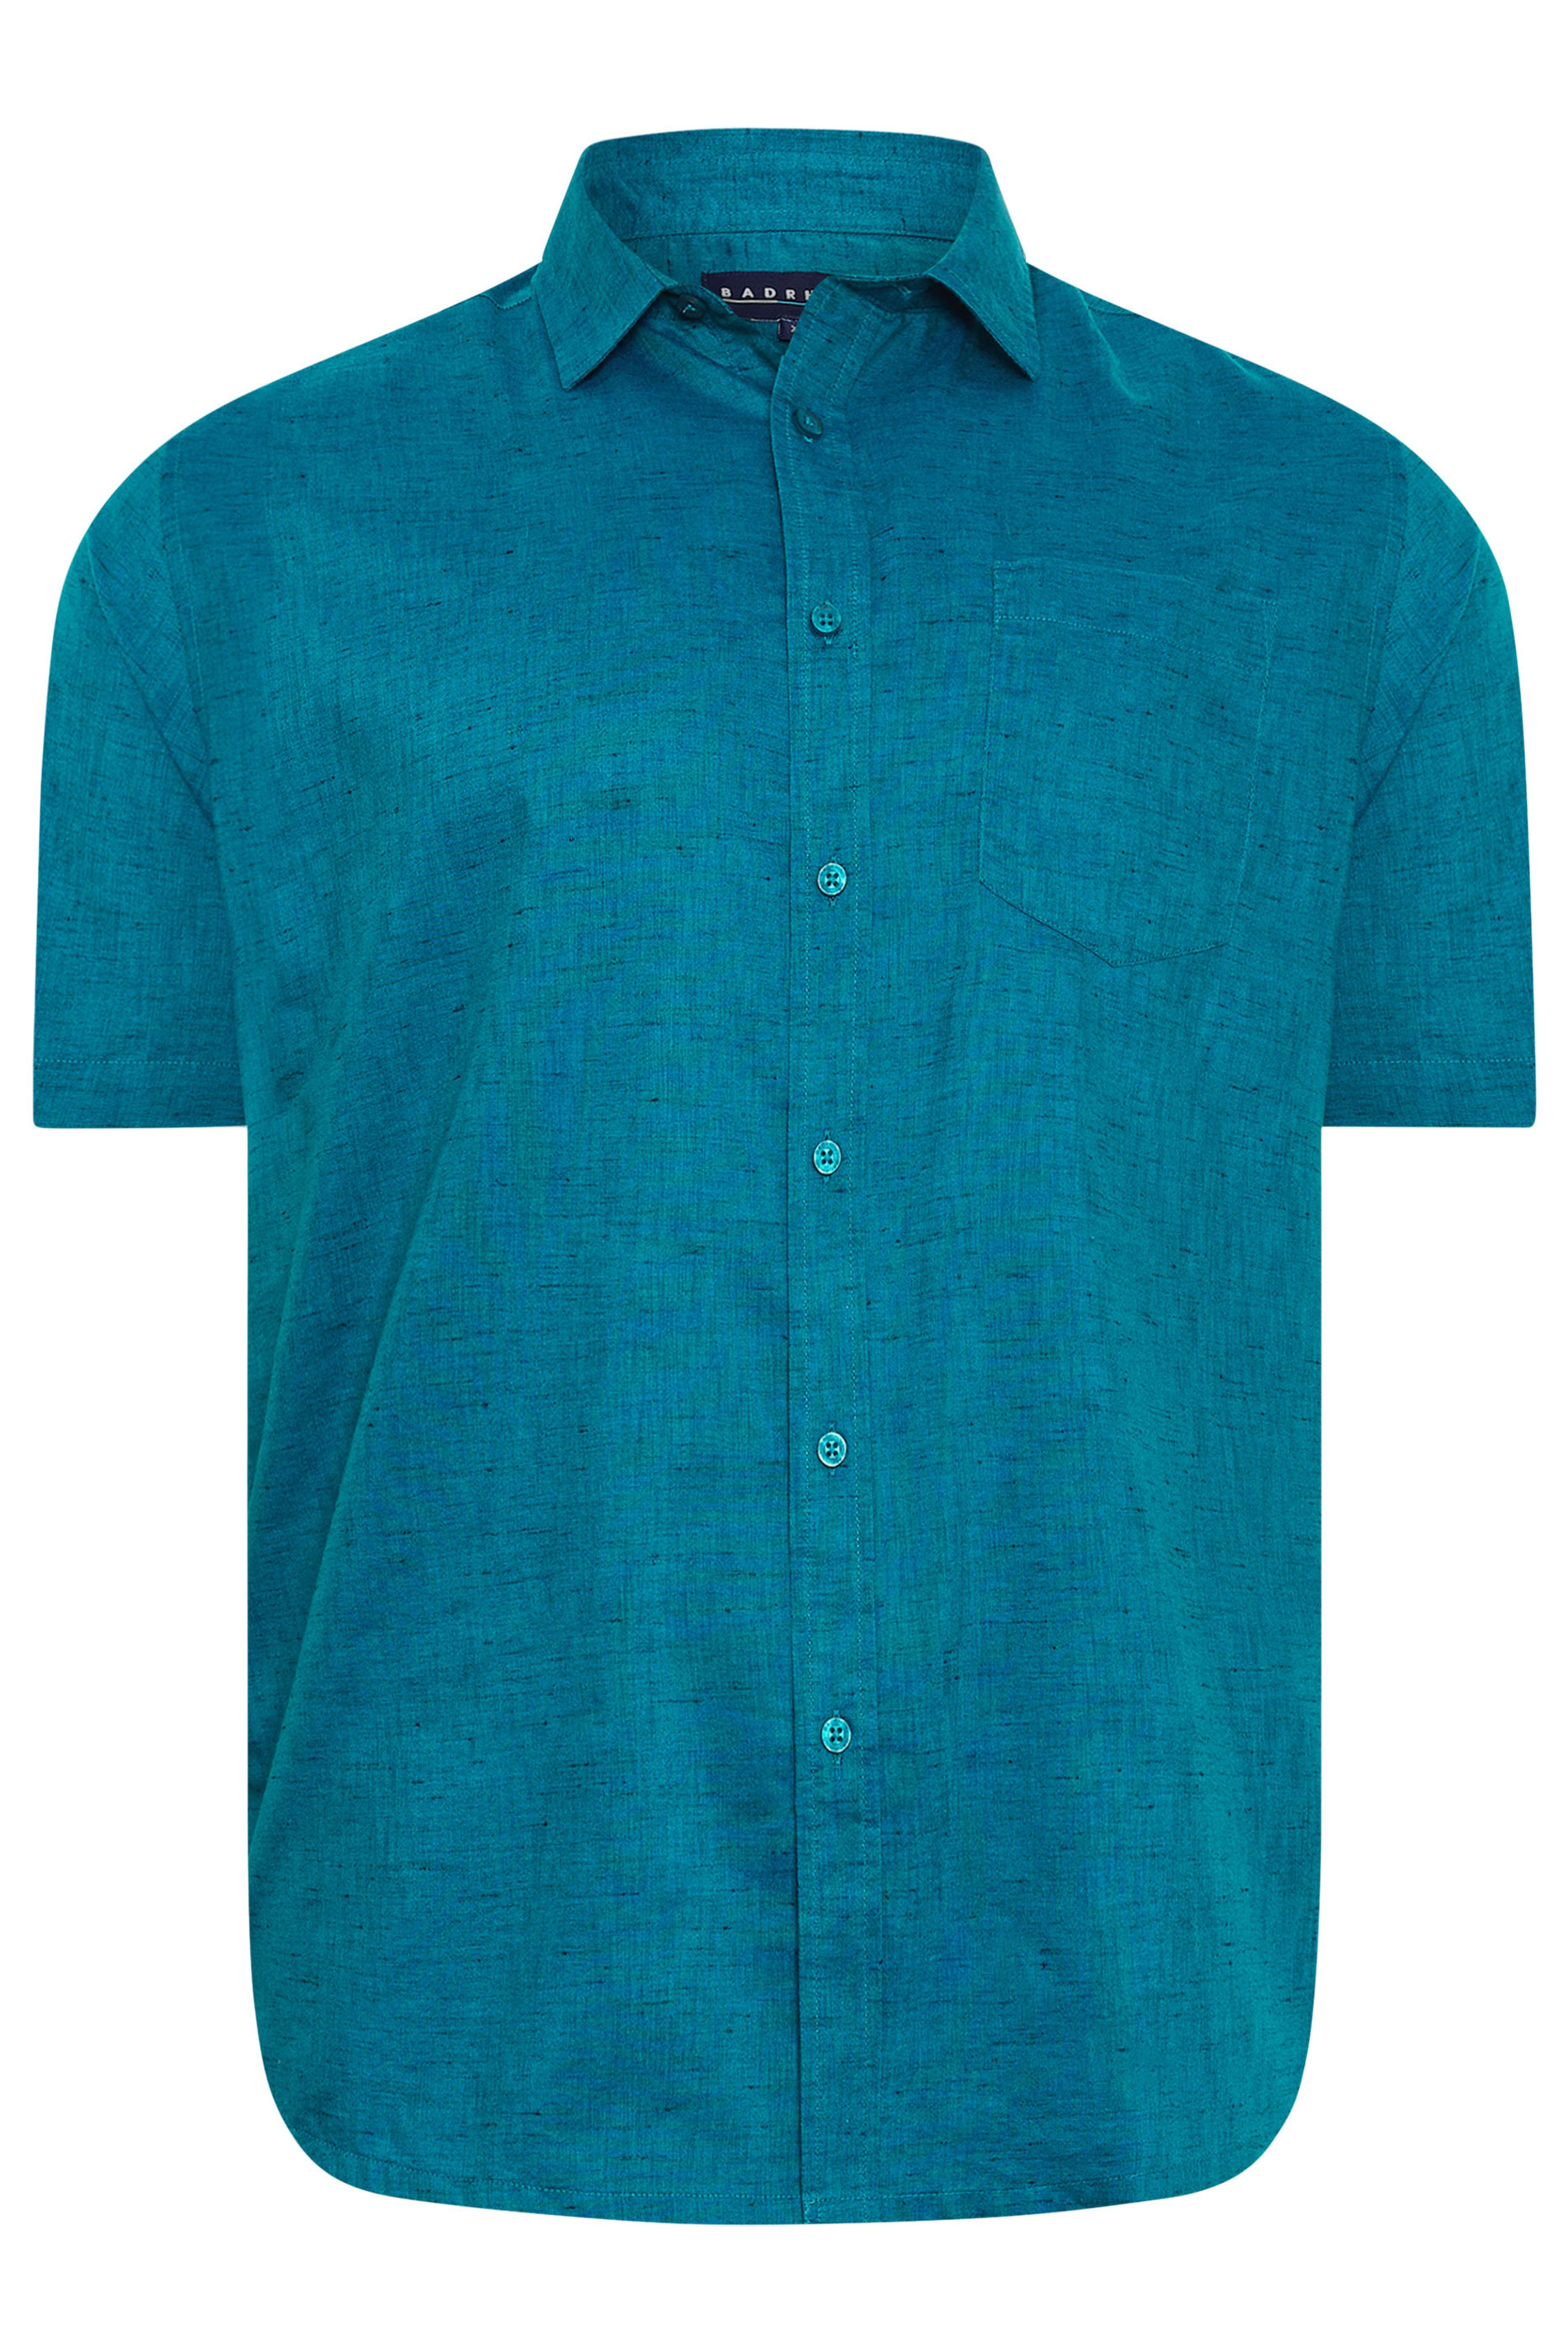 BadRhino Big & Tall Teal Blue Marl Short Sleeve Shirt | BadRhino 3